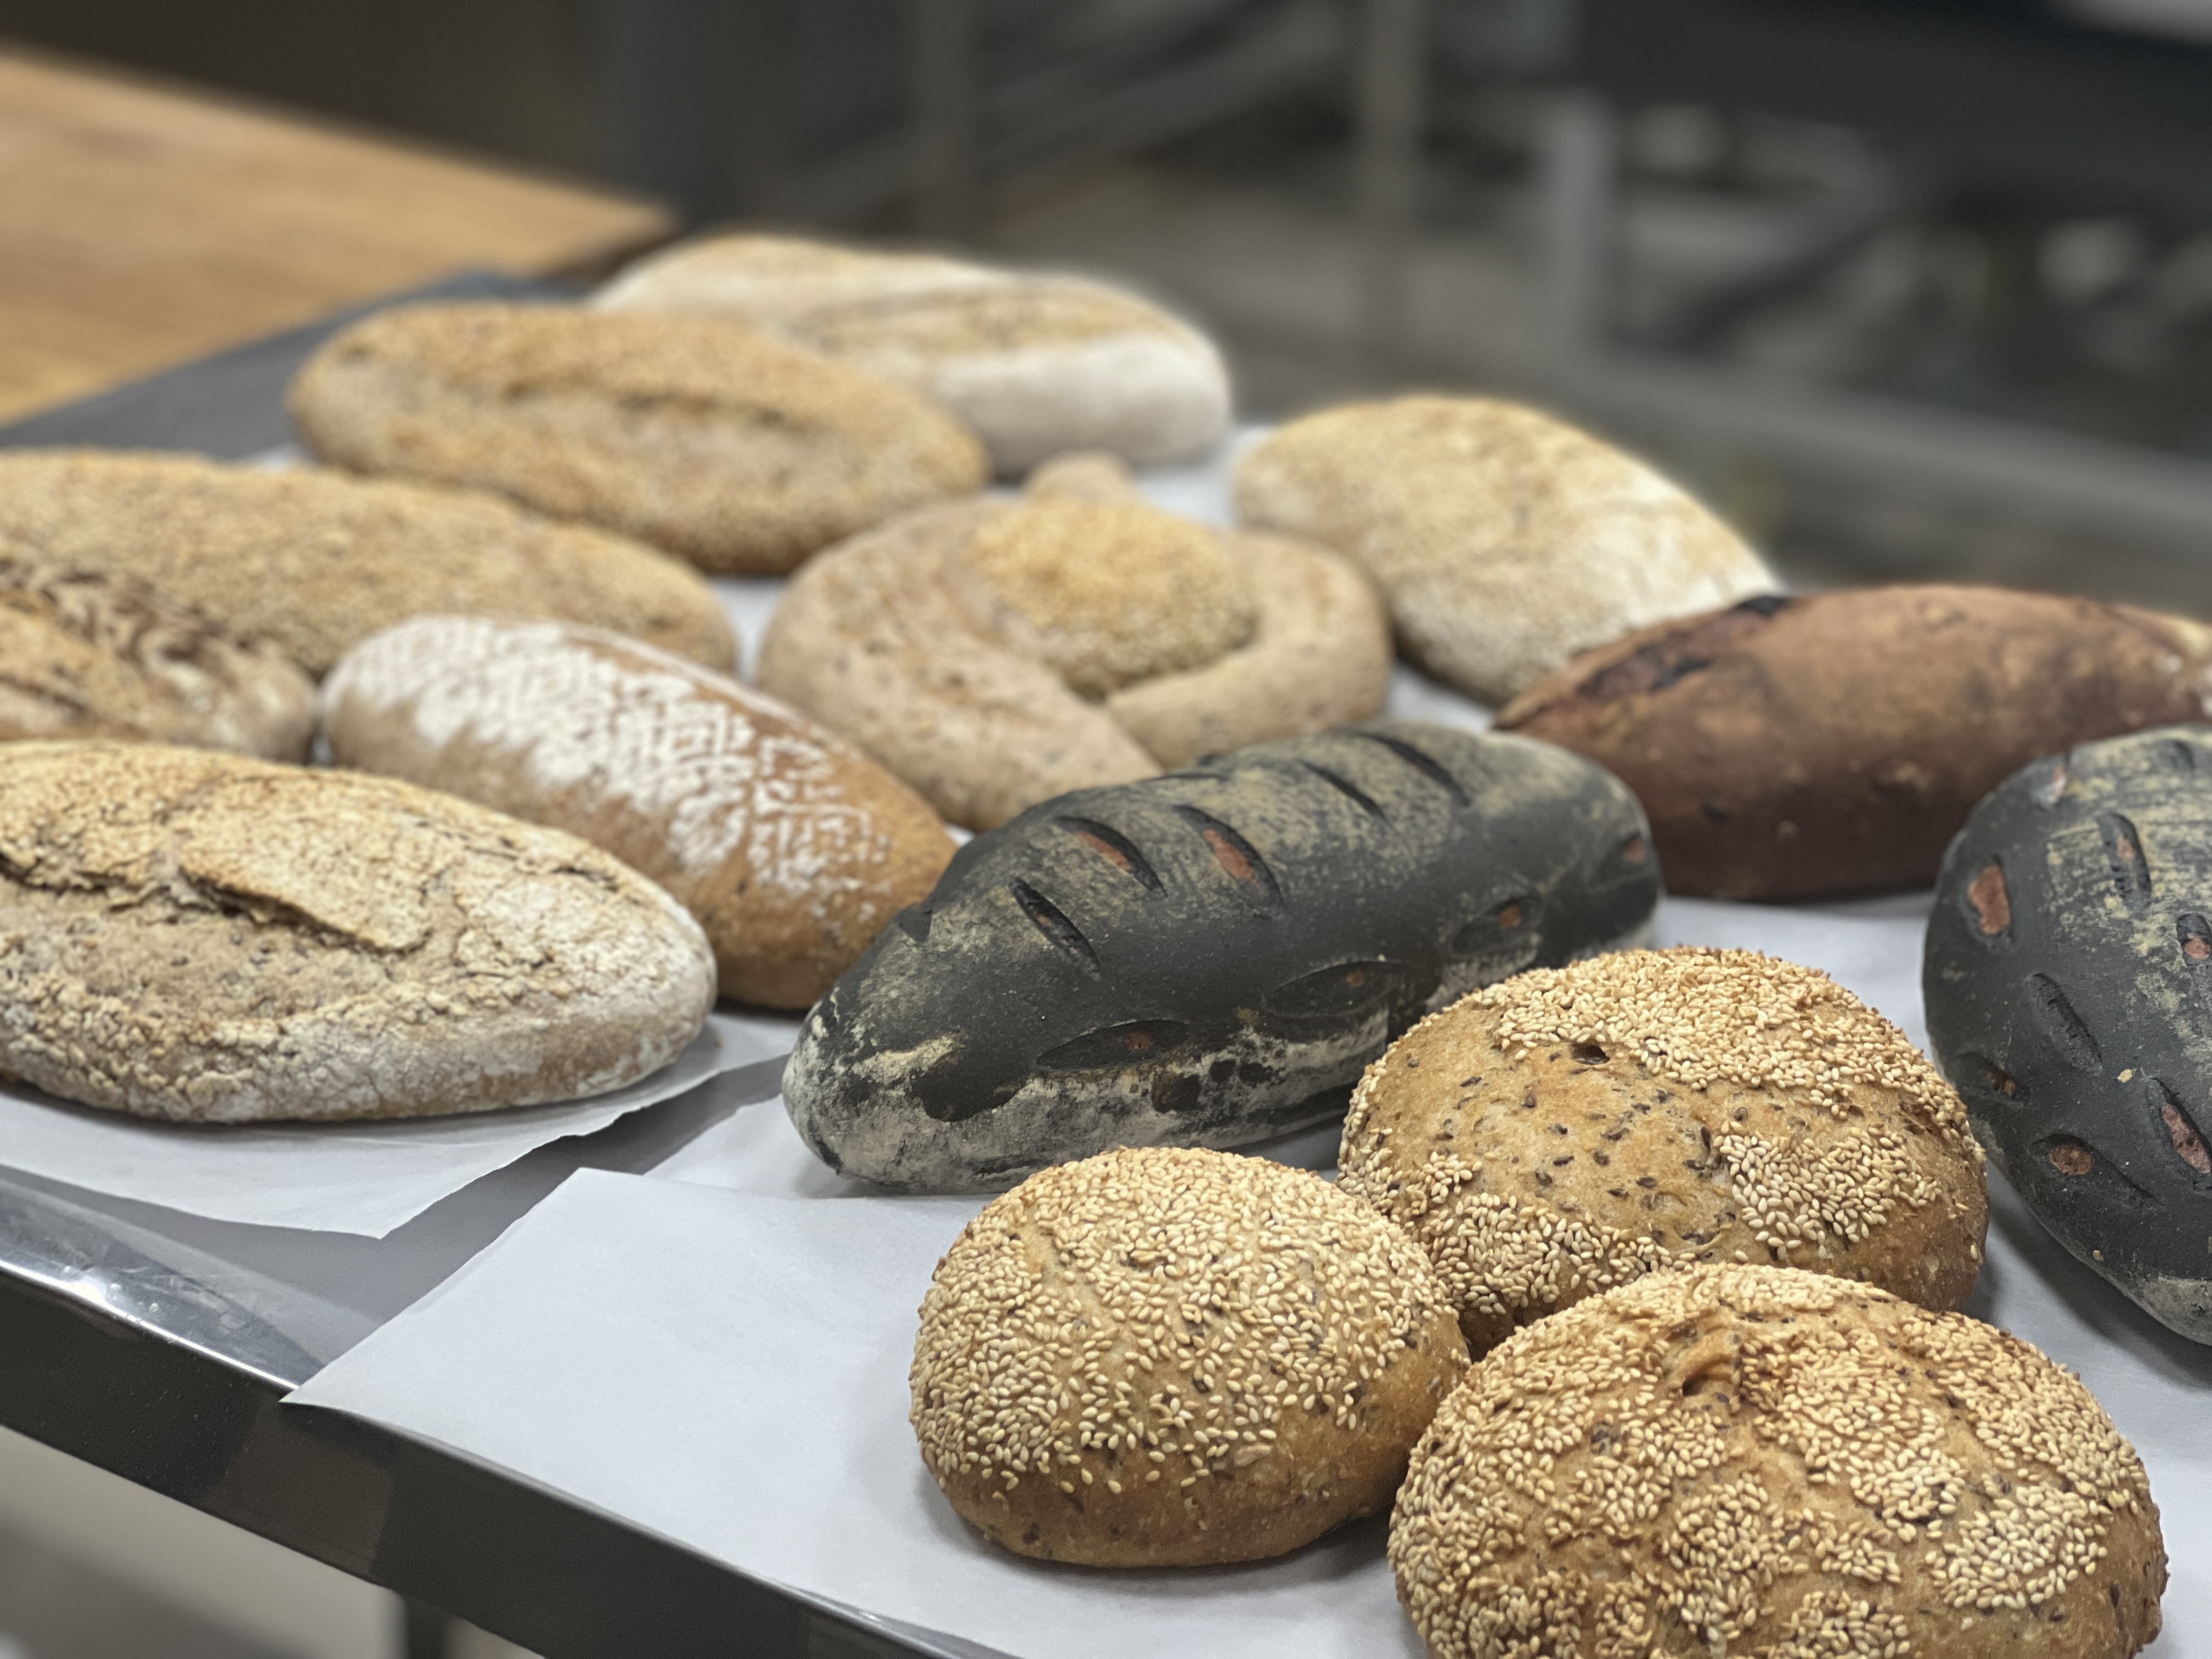 За 11 месяцев 2022 года в Сахалинской области произведено 15,5 тыс. тонн хлеба и хлебобулочных изделий